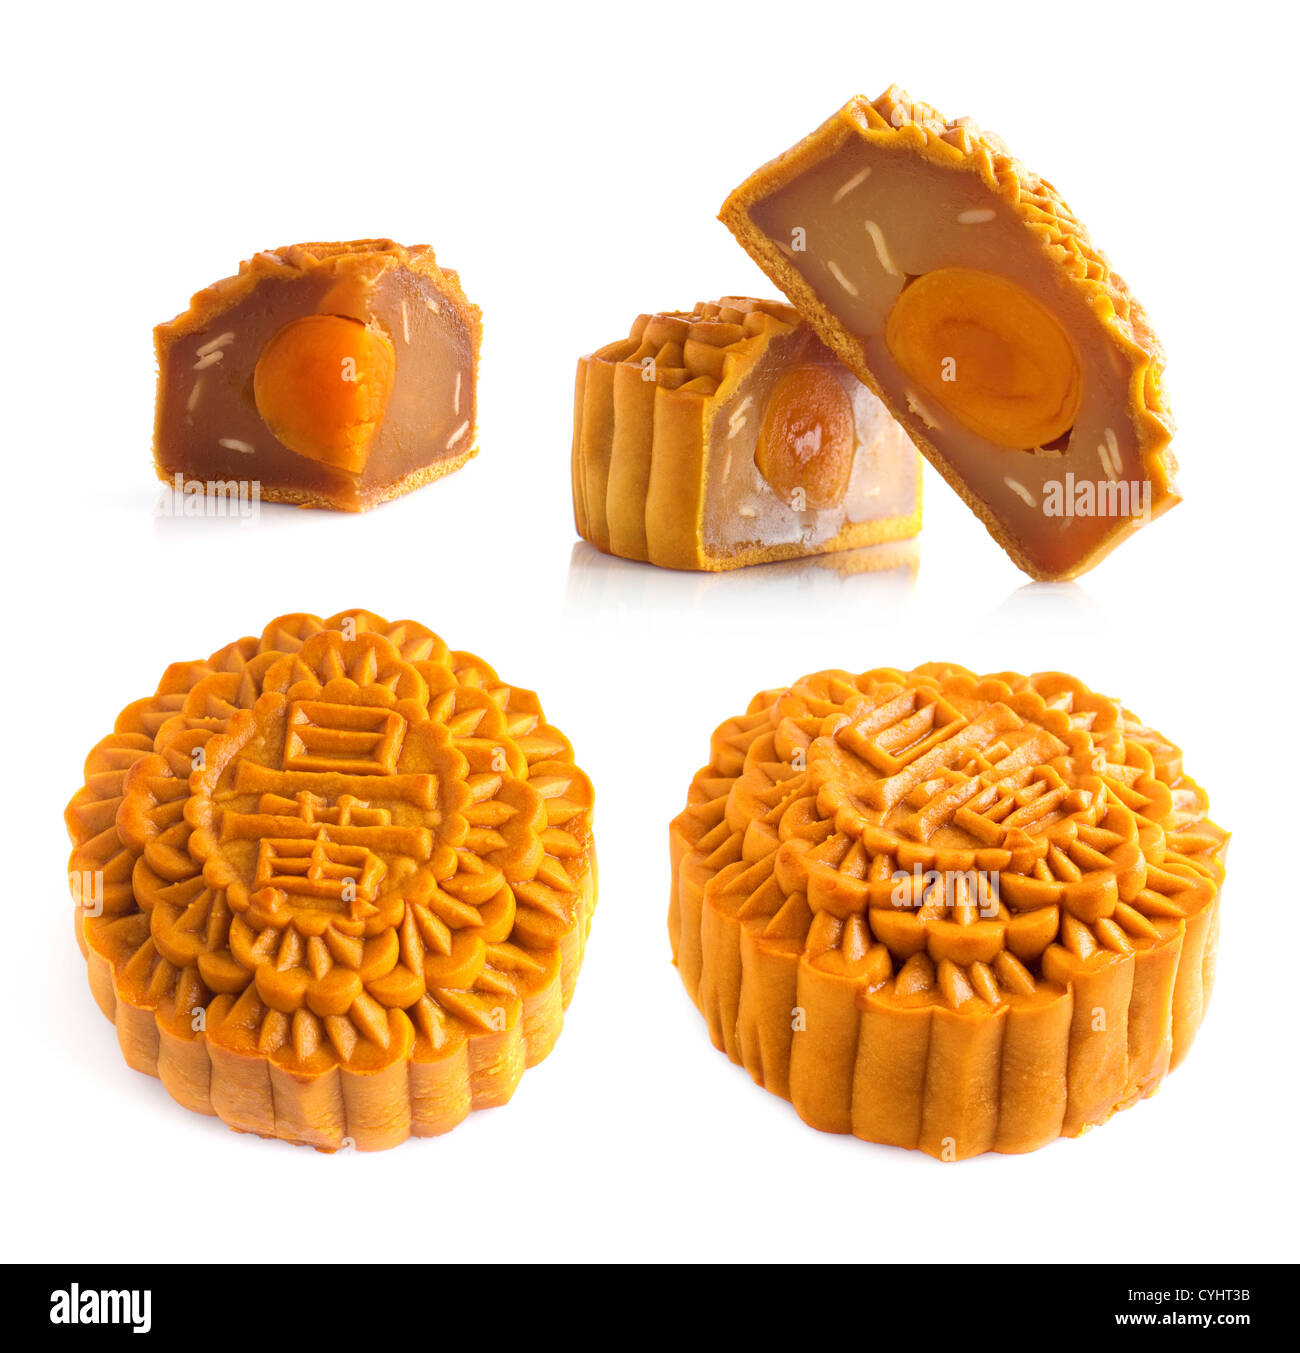 Mooncake traditionell gegessen während des Mid-Autumn-Festivals. Chinesische Wörter auf dem Mooncake bedeutet, einzelne Eigelb. Stockfoto